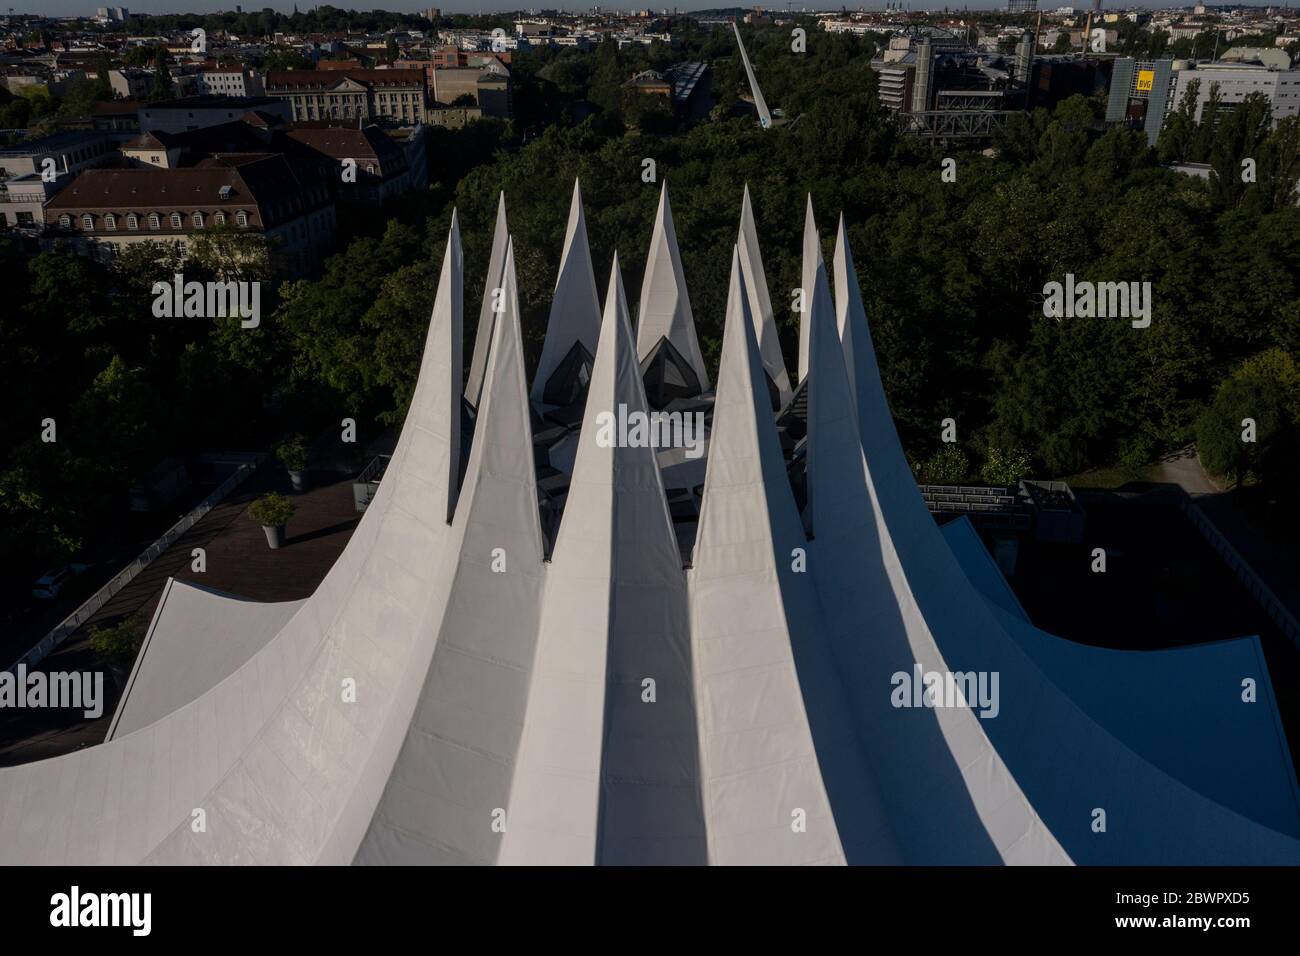 Berlin, Deutschland. Juni 2020. Die Spitzen des Zeltdaches des Tempodrom heben sich von den Bäumen ab. (Luftaufnahme mit einer Drohne) Quelle: Paul Zinken/dpa-zb-Zentralbild/dpa/Alamy Live News Stockfoto